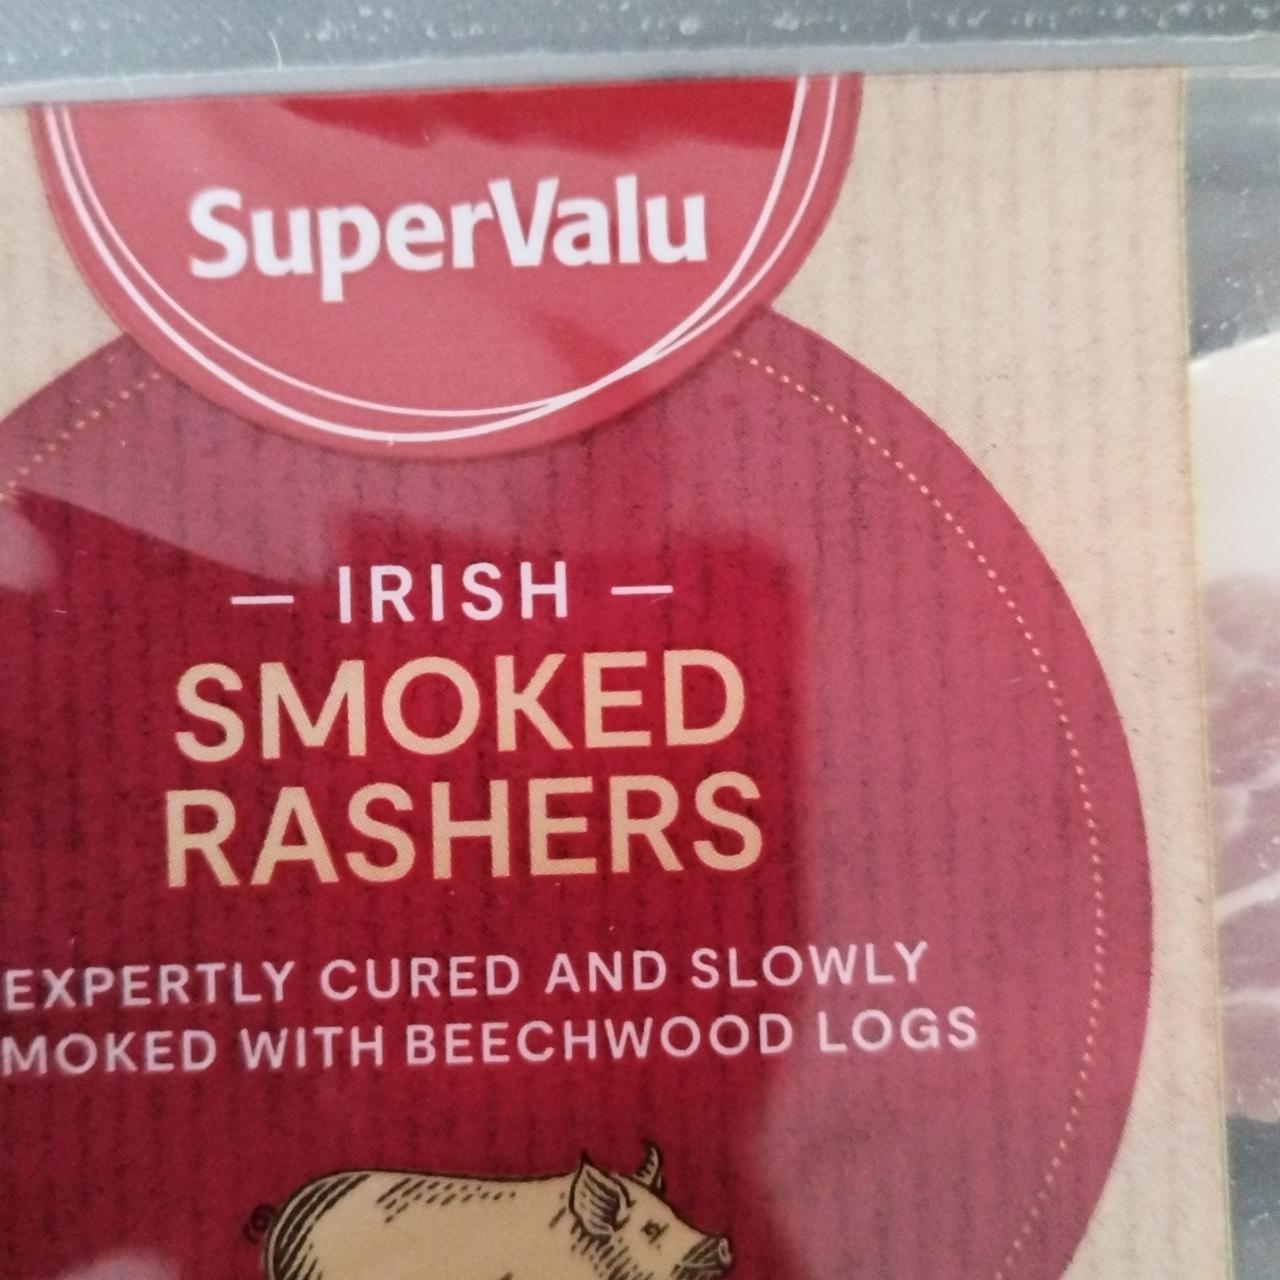 Fotografie - Irish Smoked Rashers SuperValu